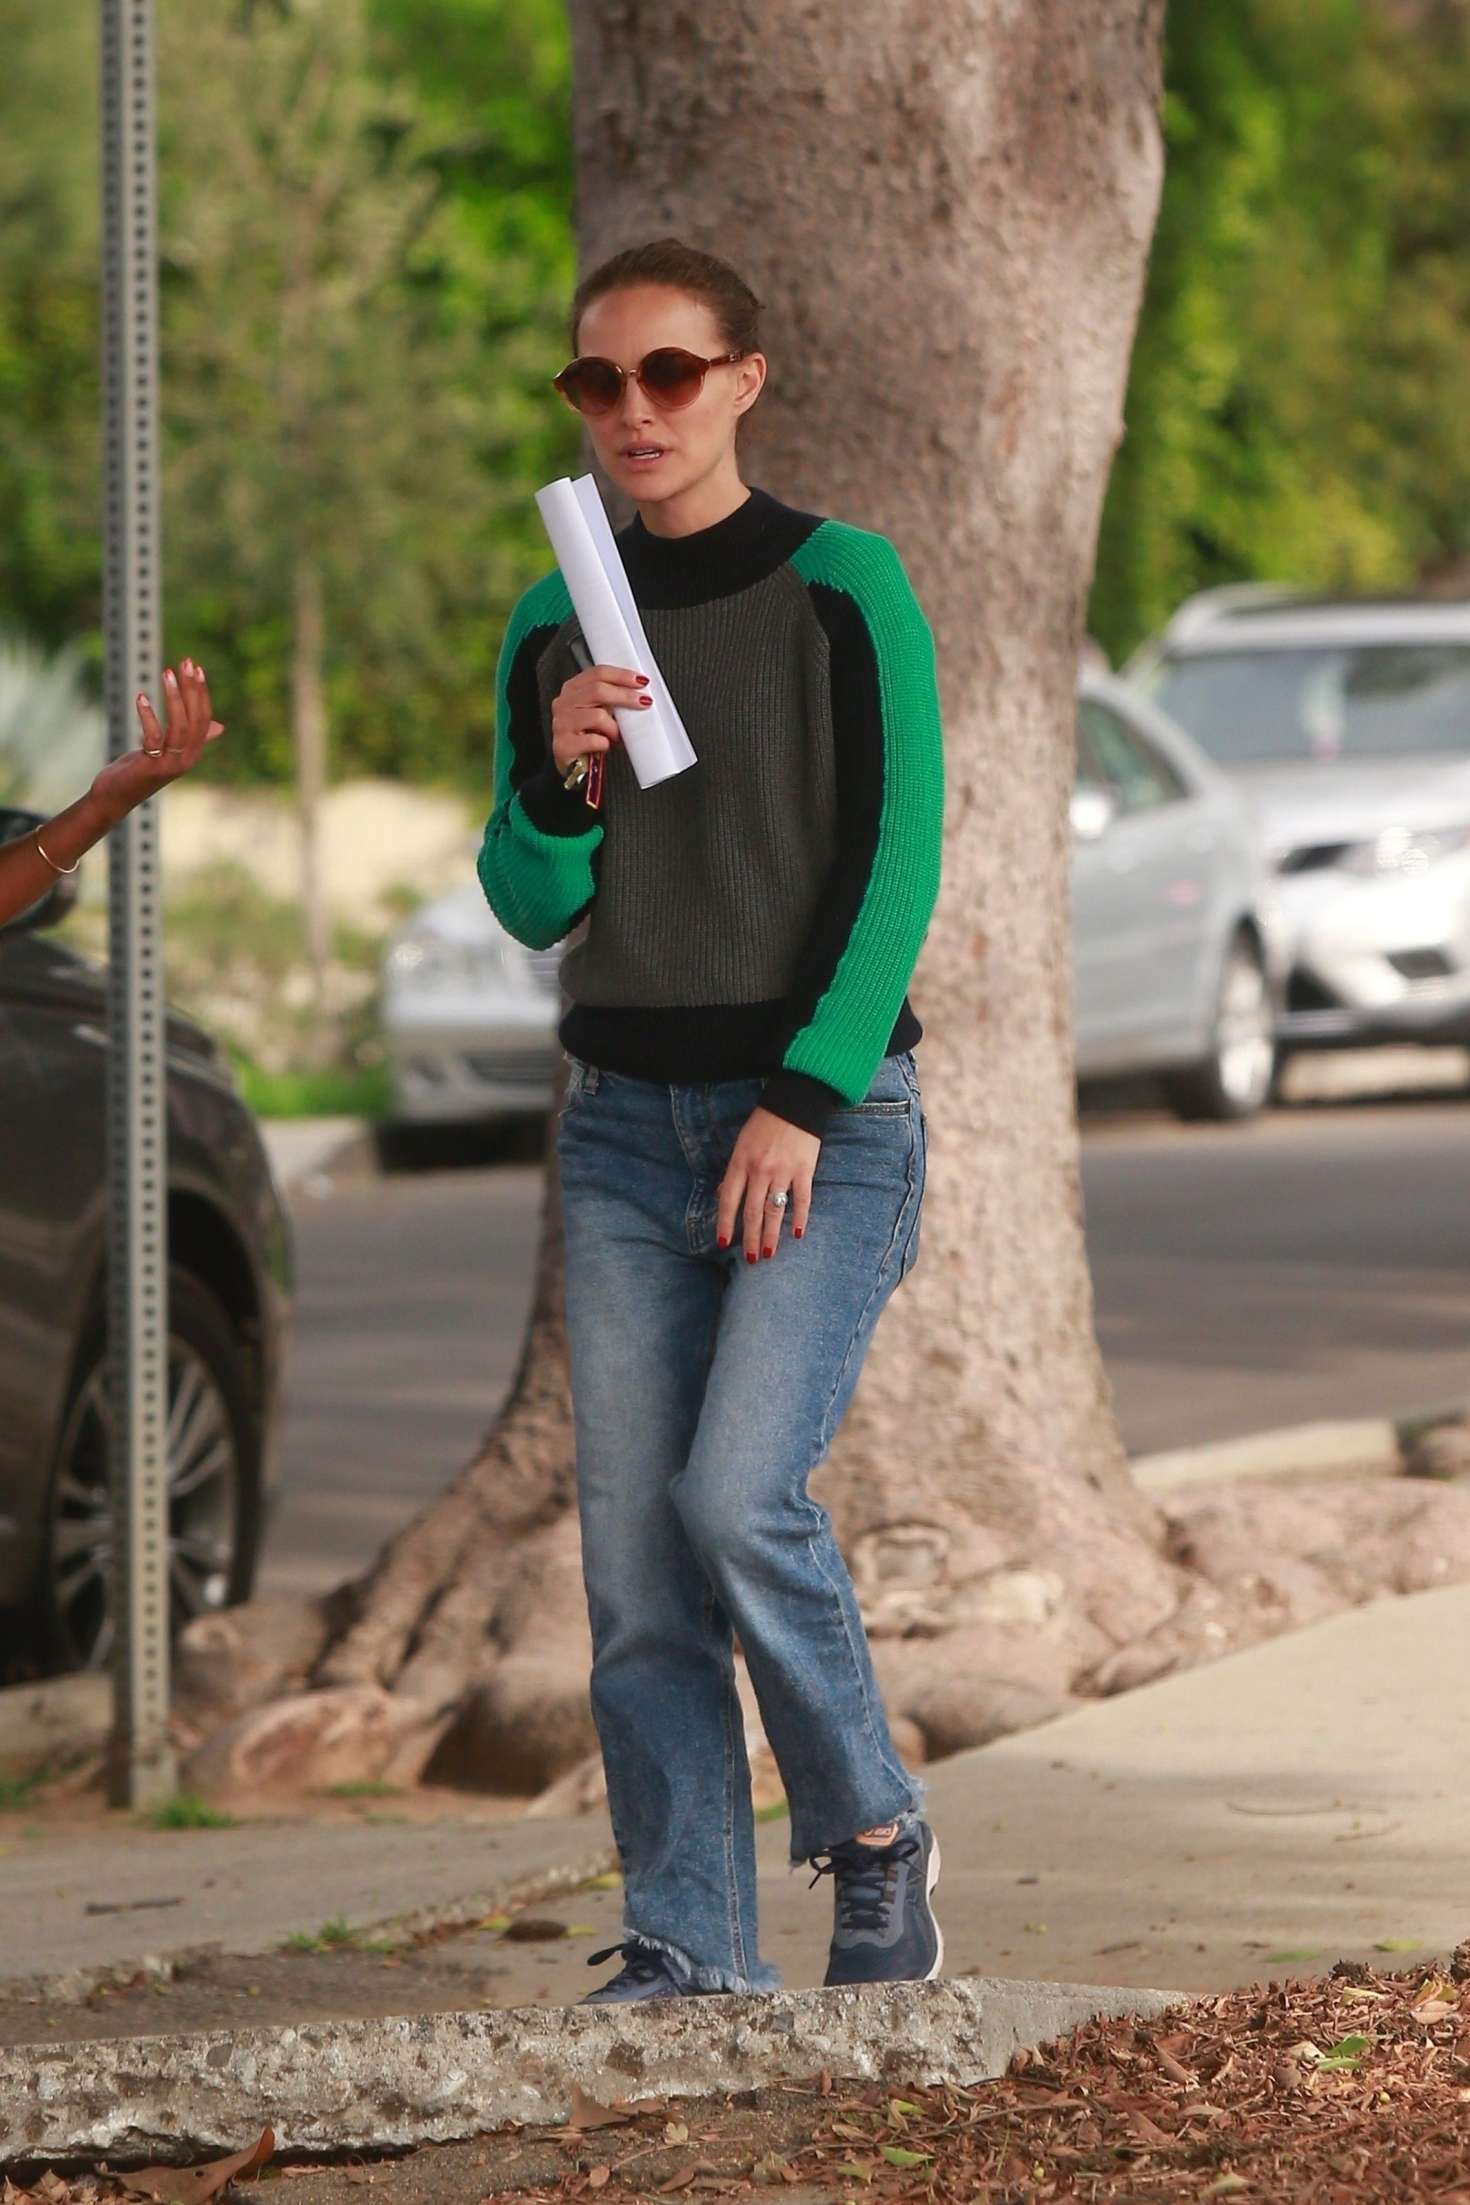 Natalie Portman 2019 : Natalie Portman with a friend out in Los Feliz -09